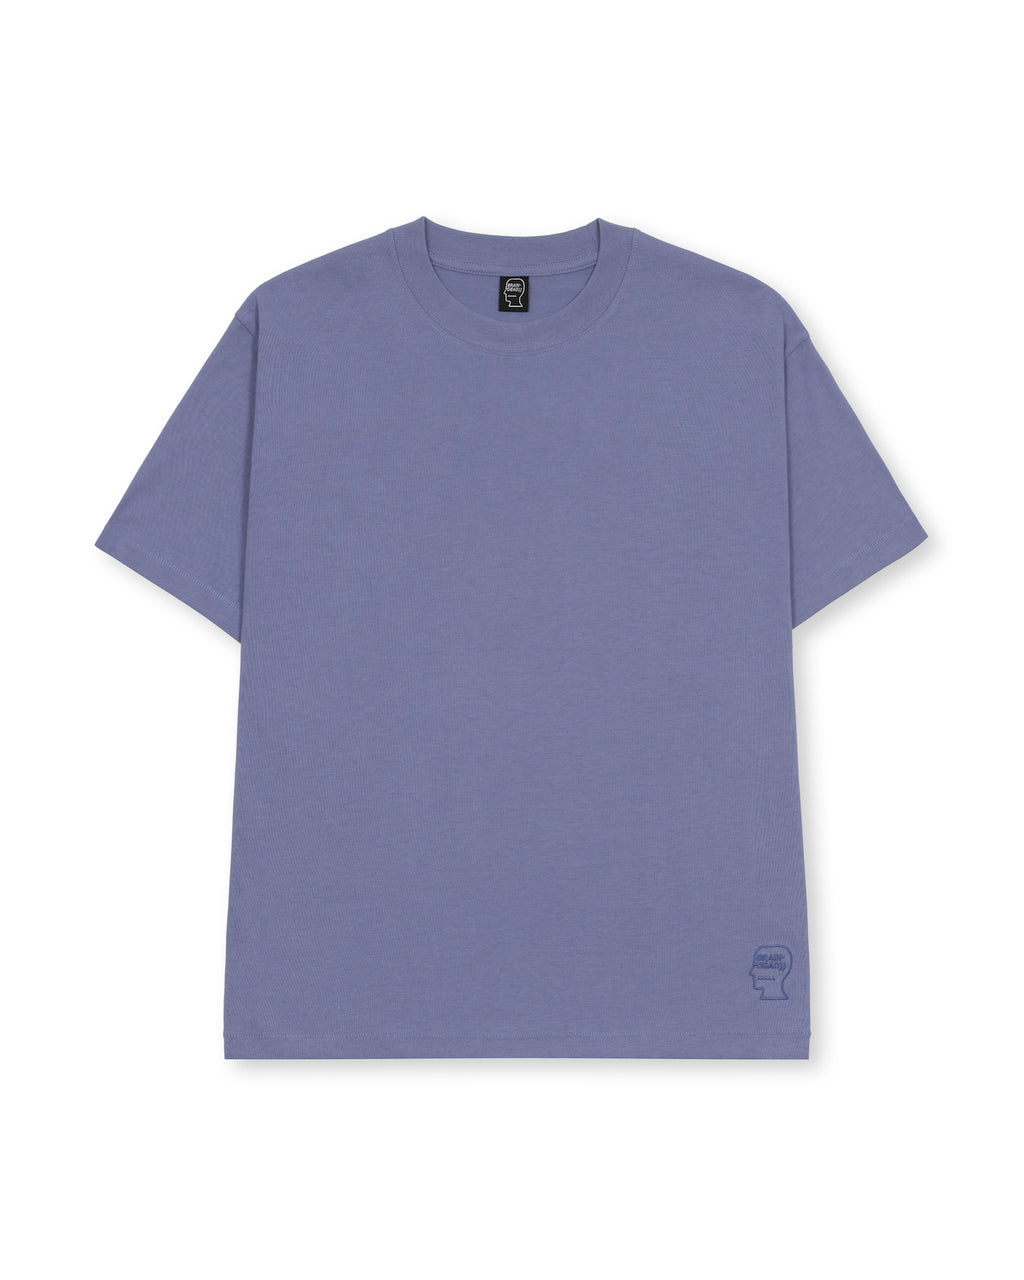 Easy Shirt - Lilac 1